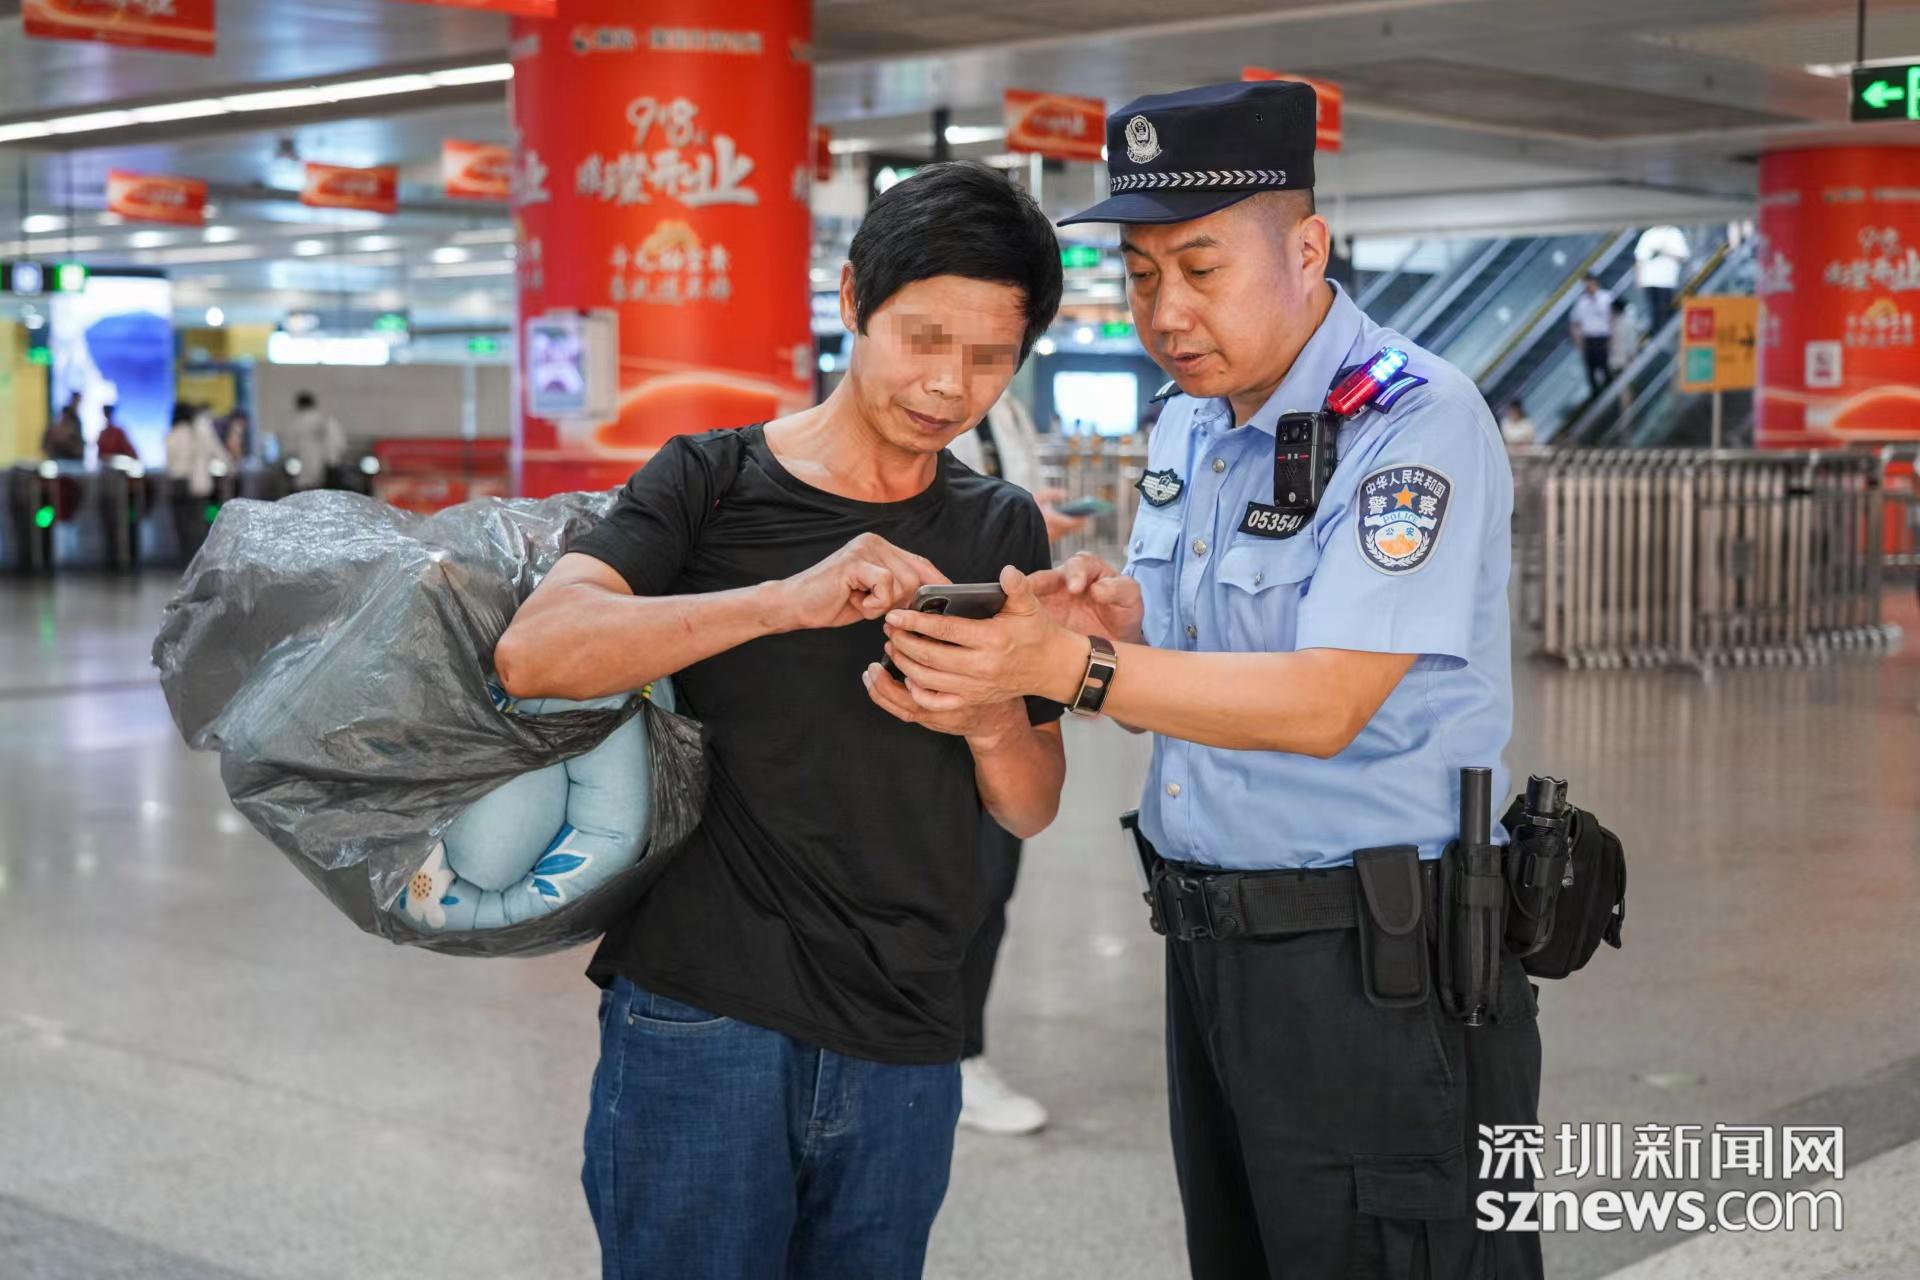 深圳警察试穿新警服图片